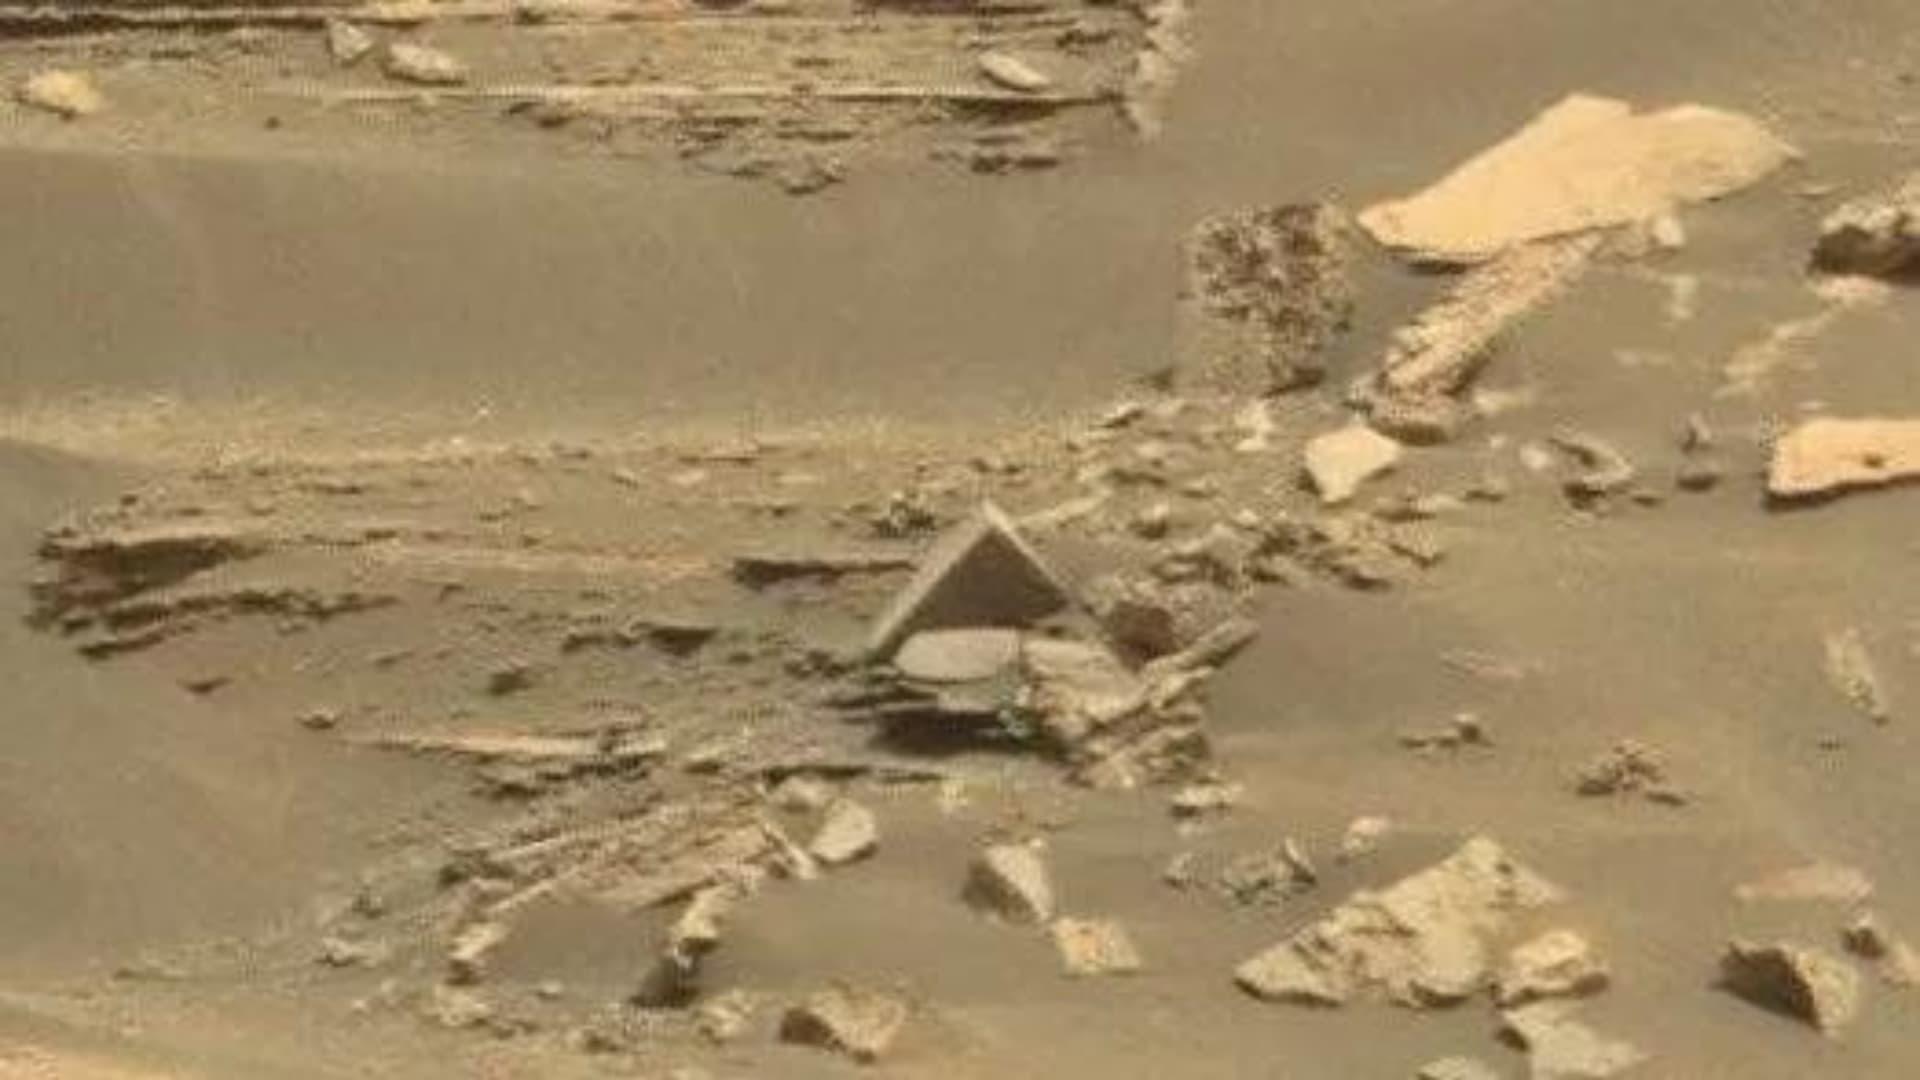 Formação rochosa em Marte se parece com uma pirâmide (NASA)